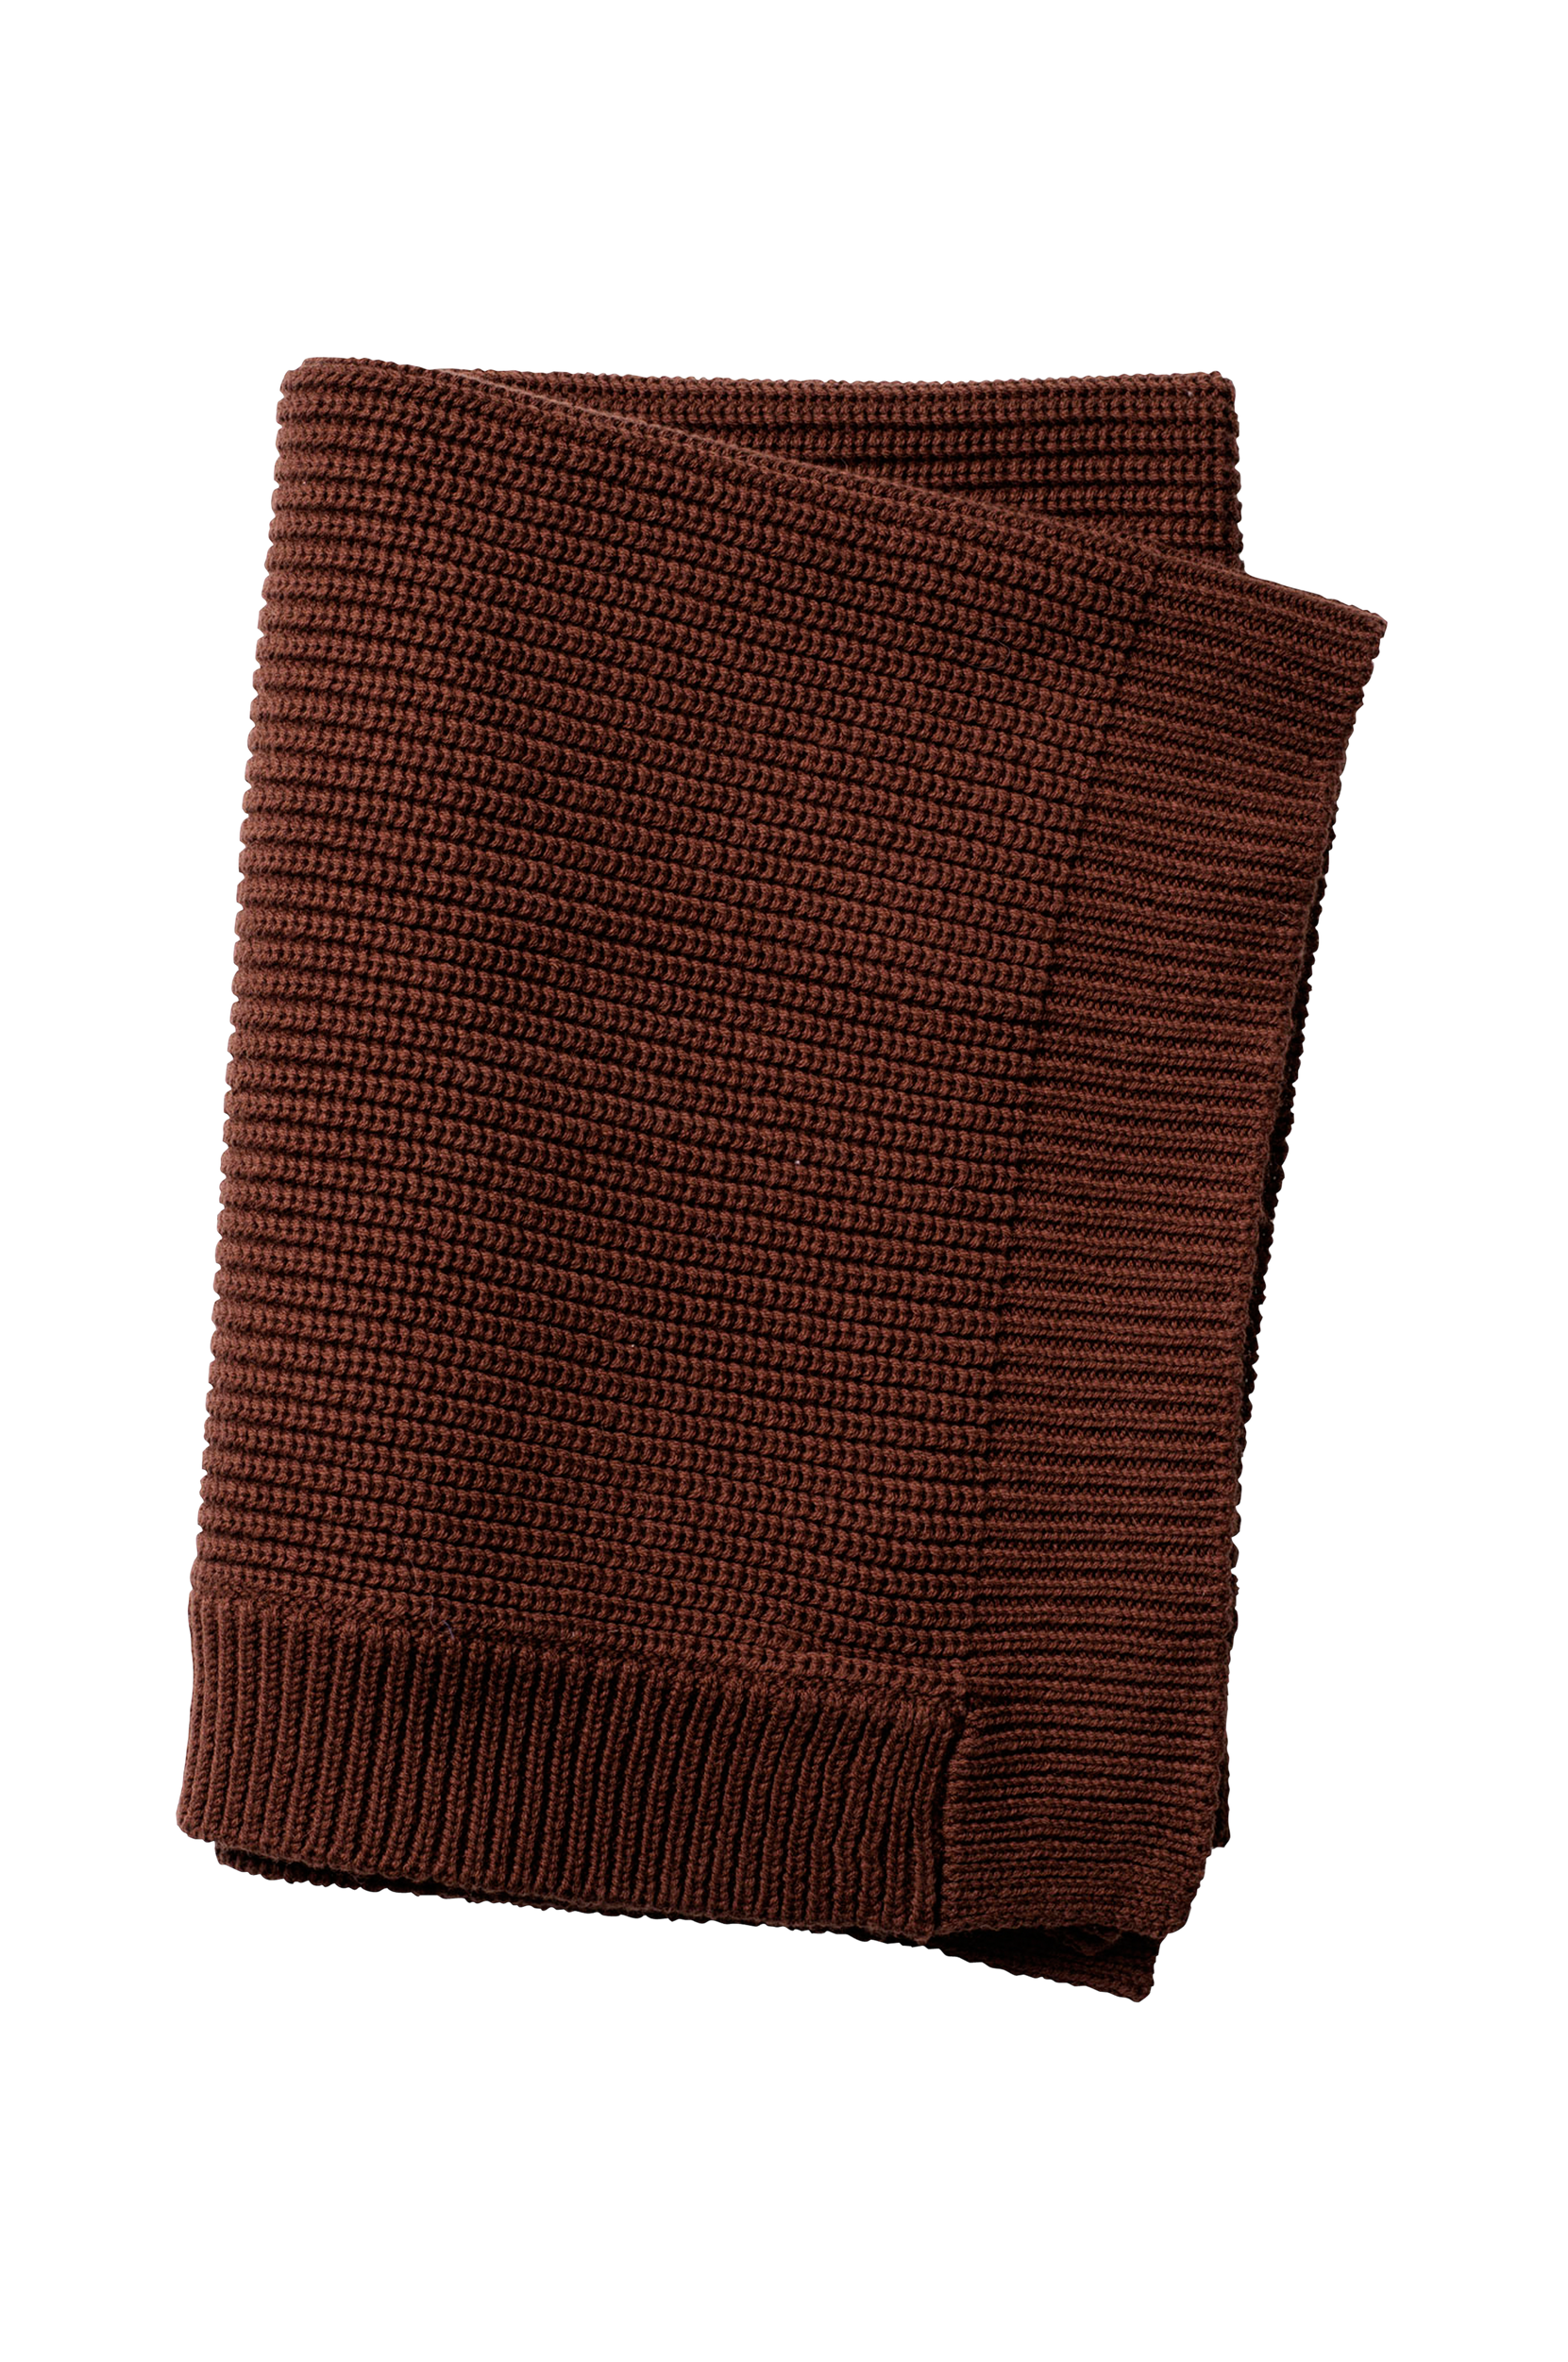 Wool Knitted Blanket - Chocolate, Elodie Details